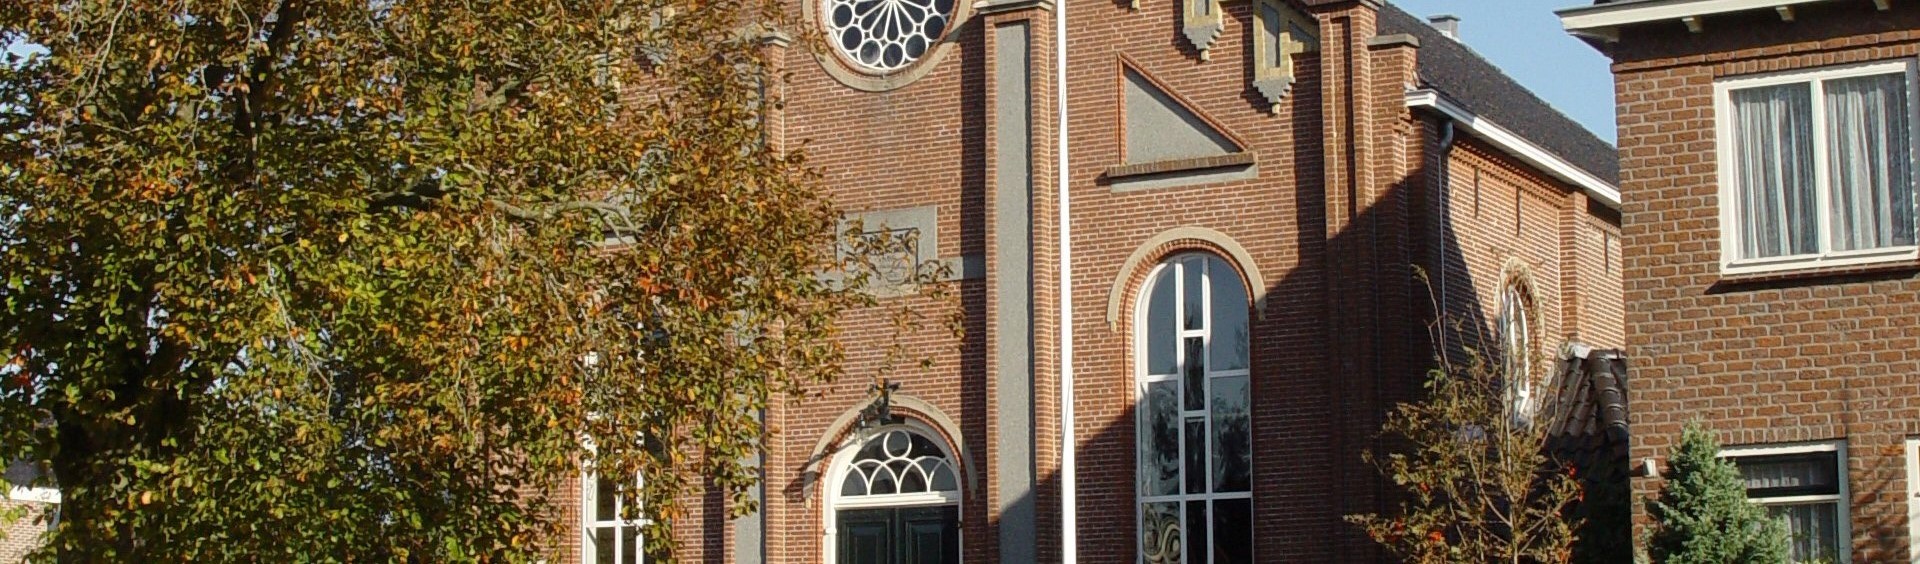 Gereformeerde kerk PKN Ten Boer